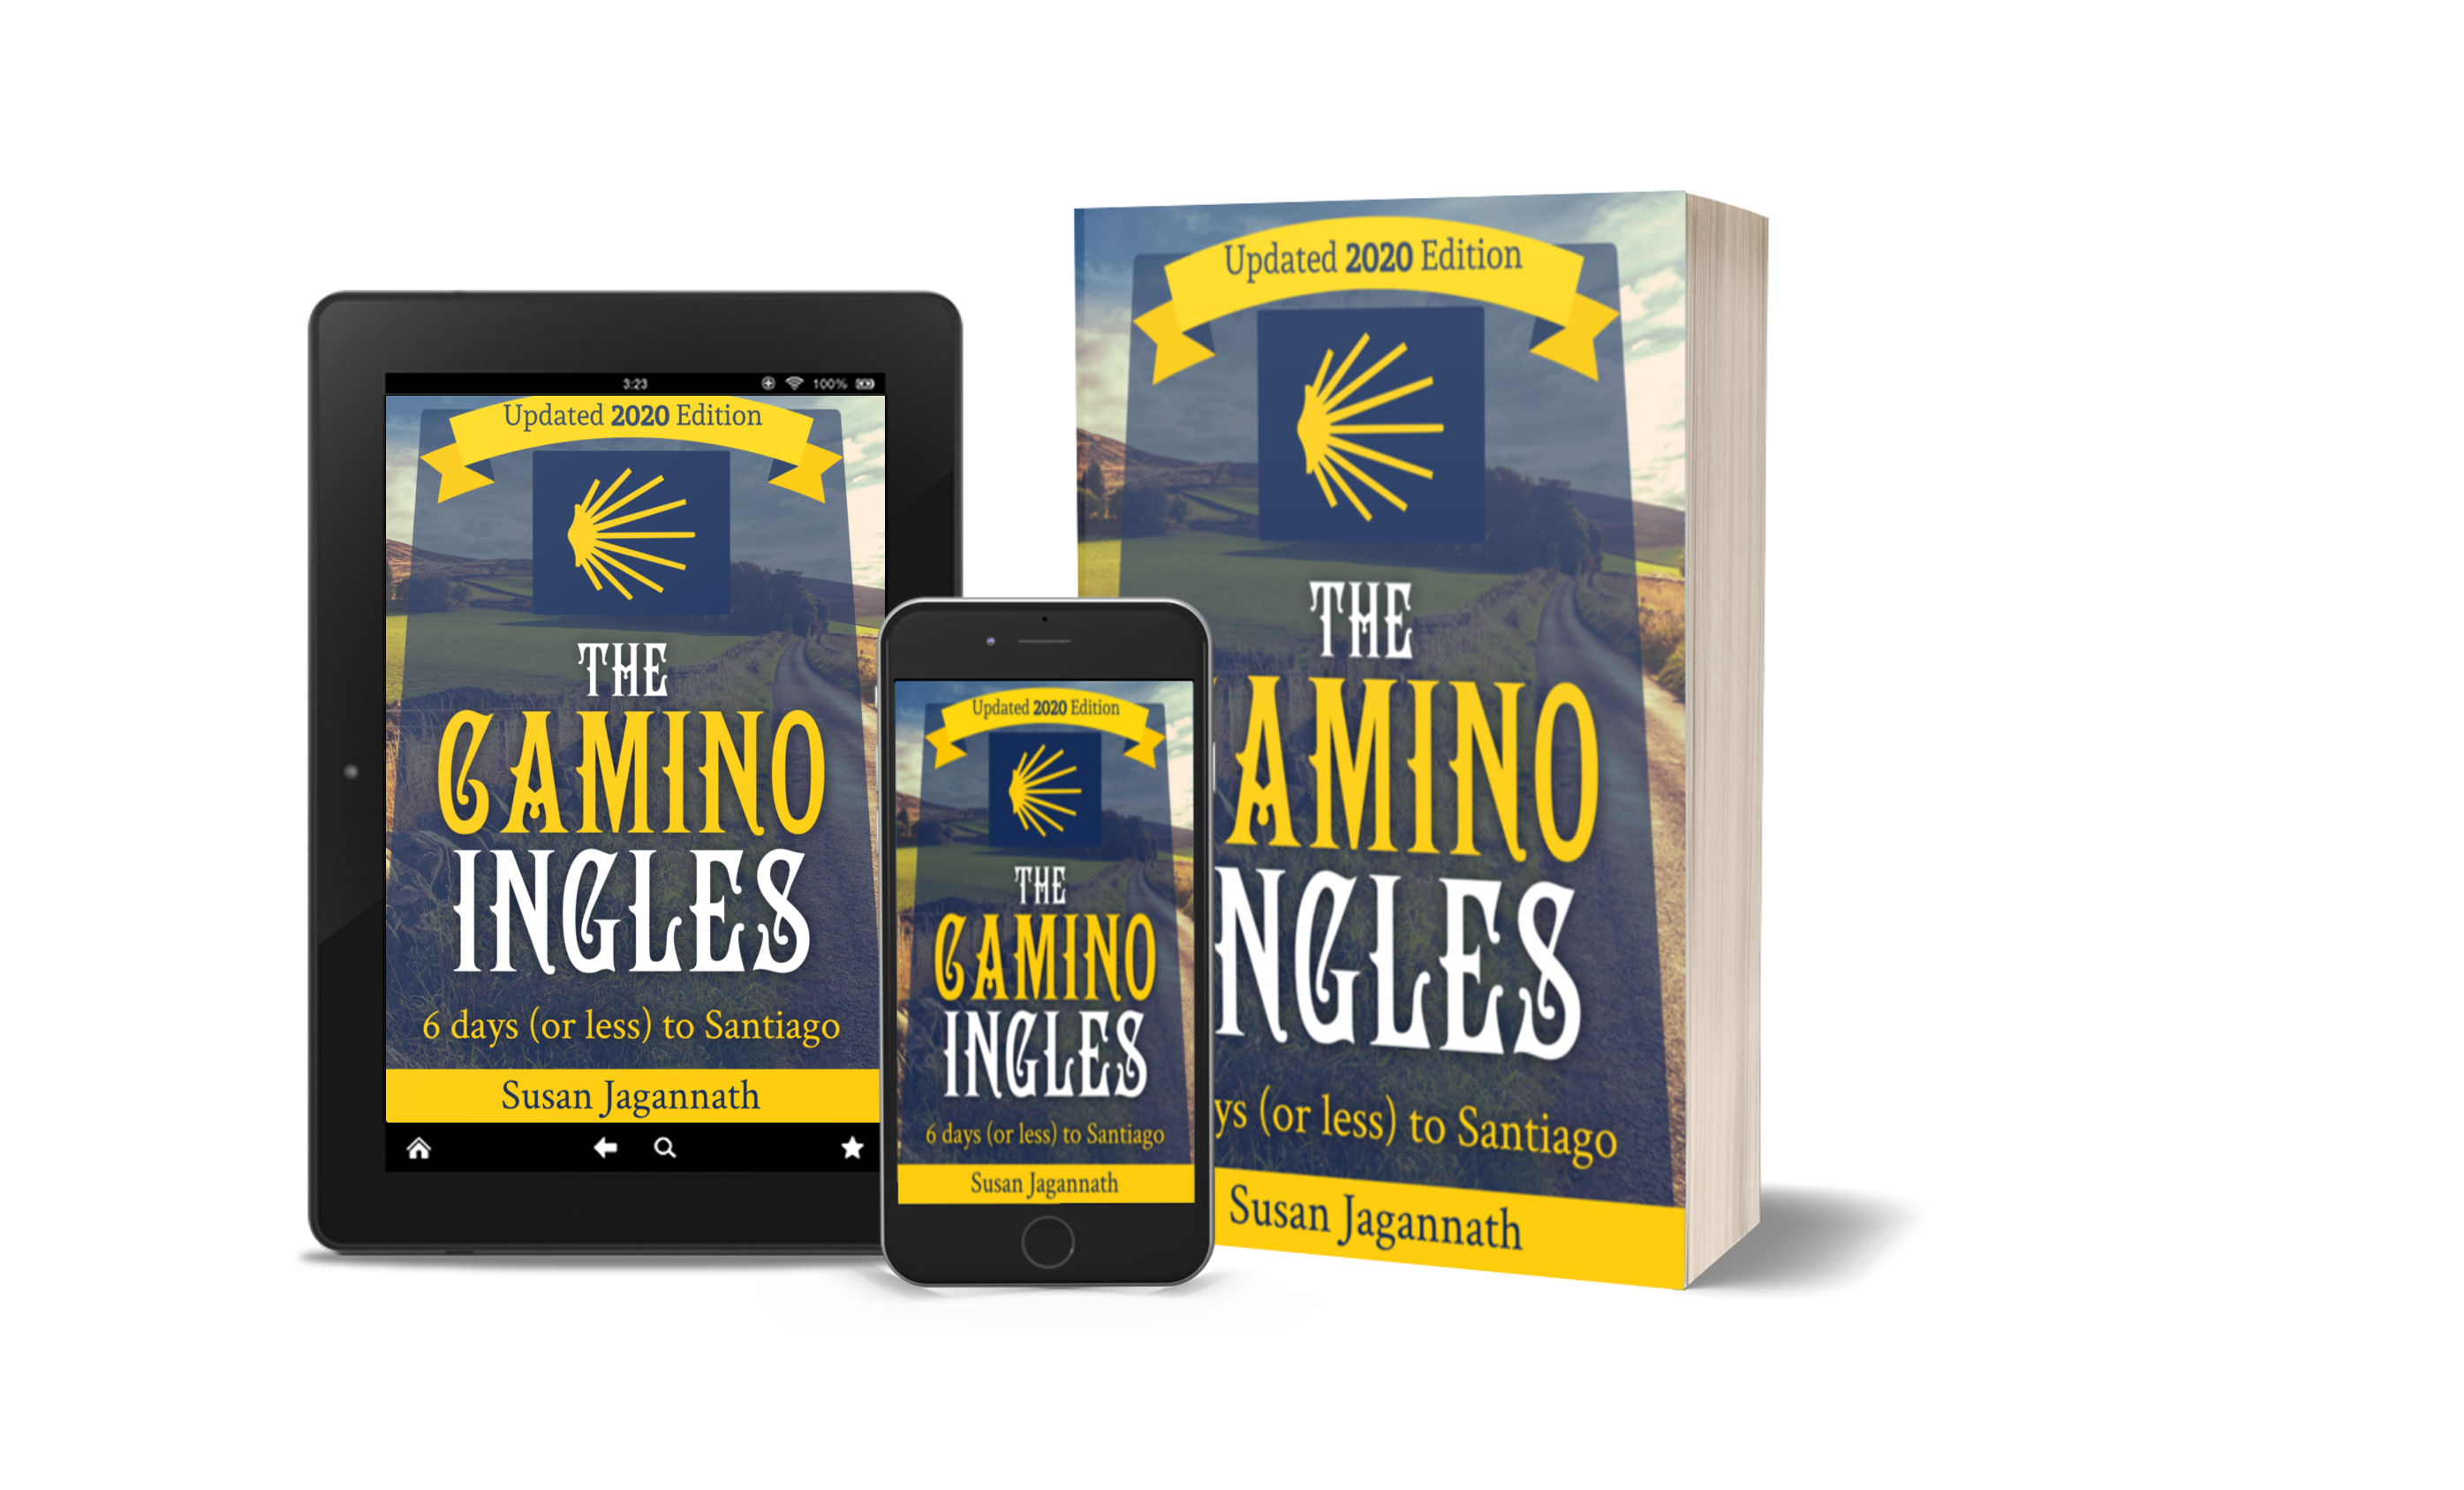 The Camino Ingles